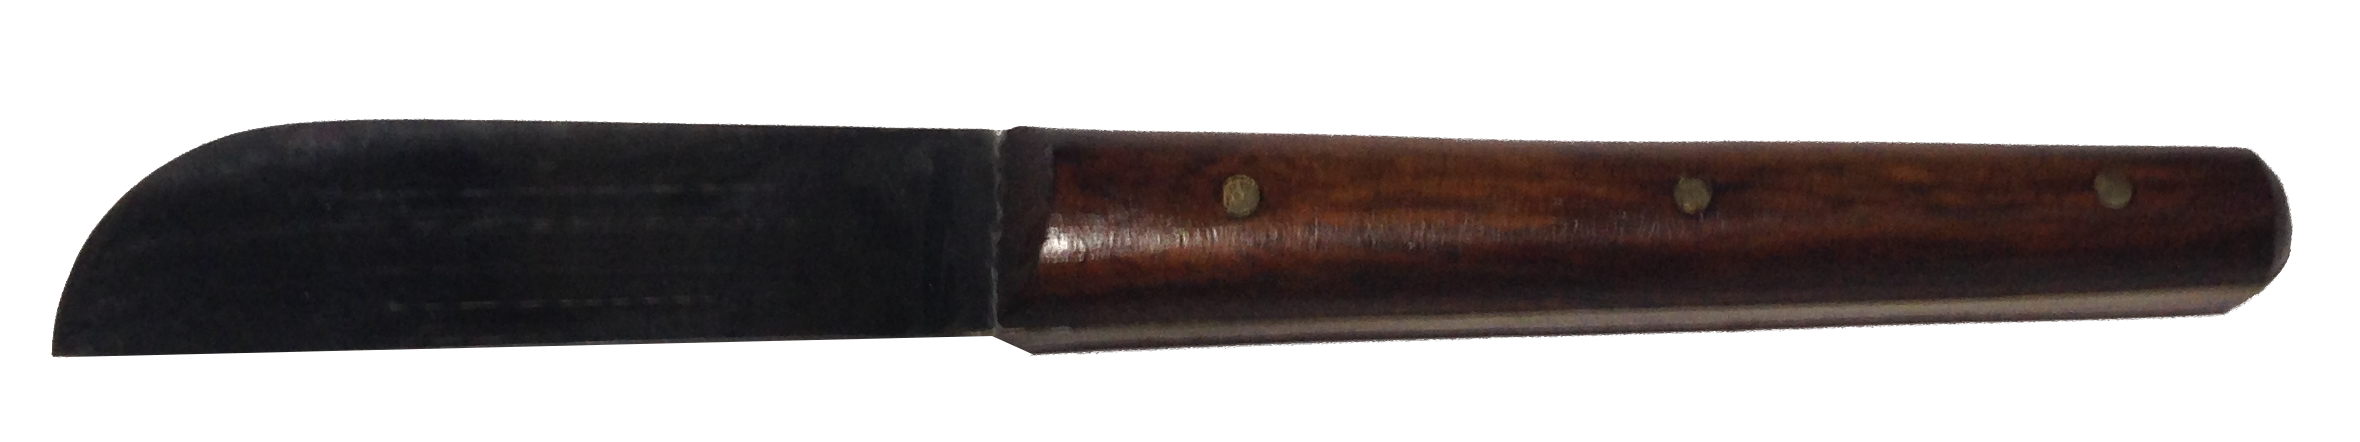 картинка нож для гипса 14,5 см, лезвие 5,5 см от Клио